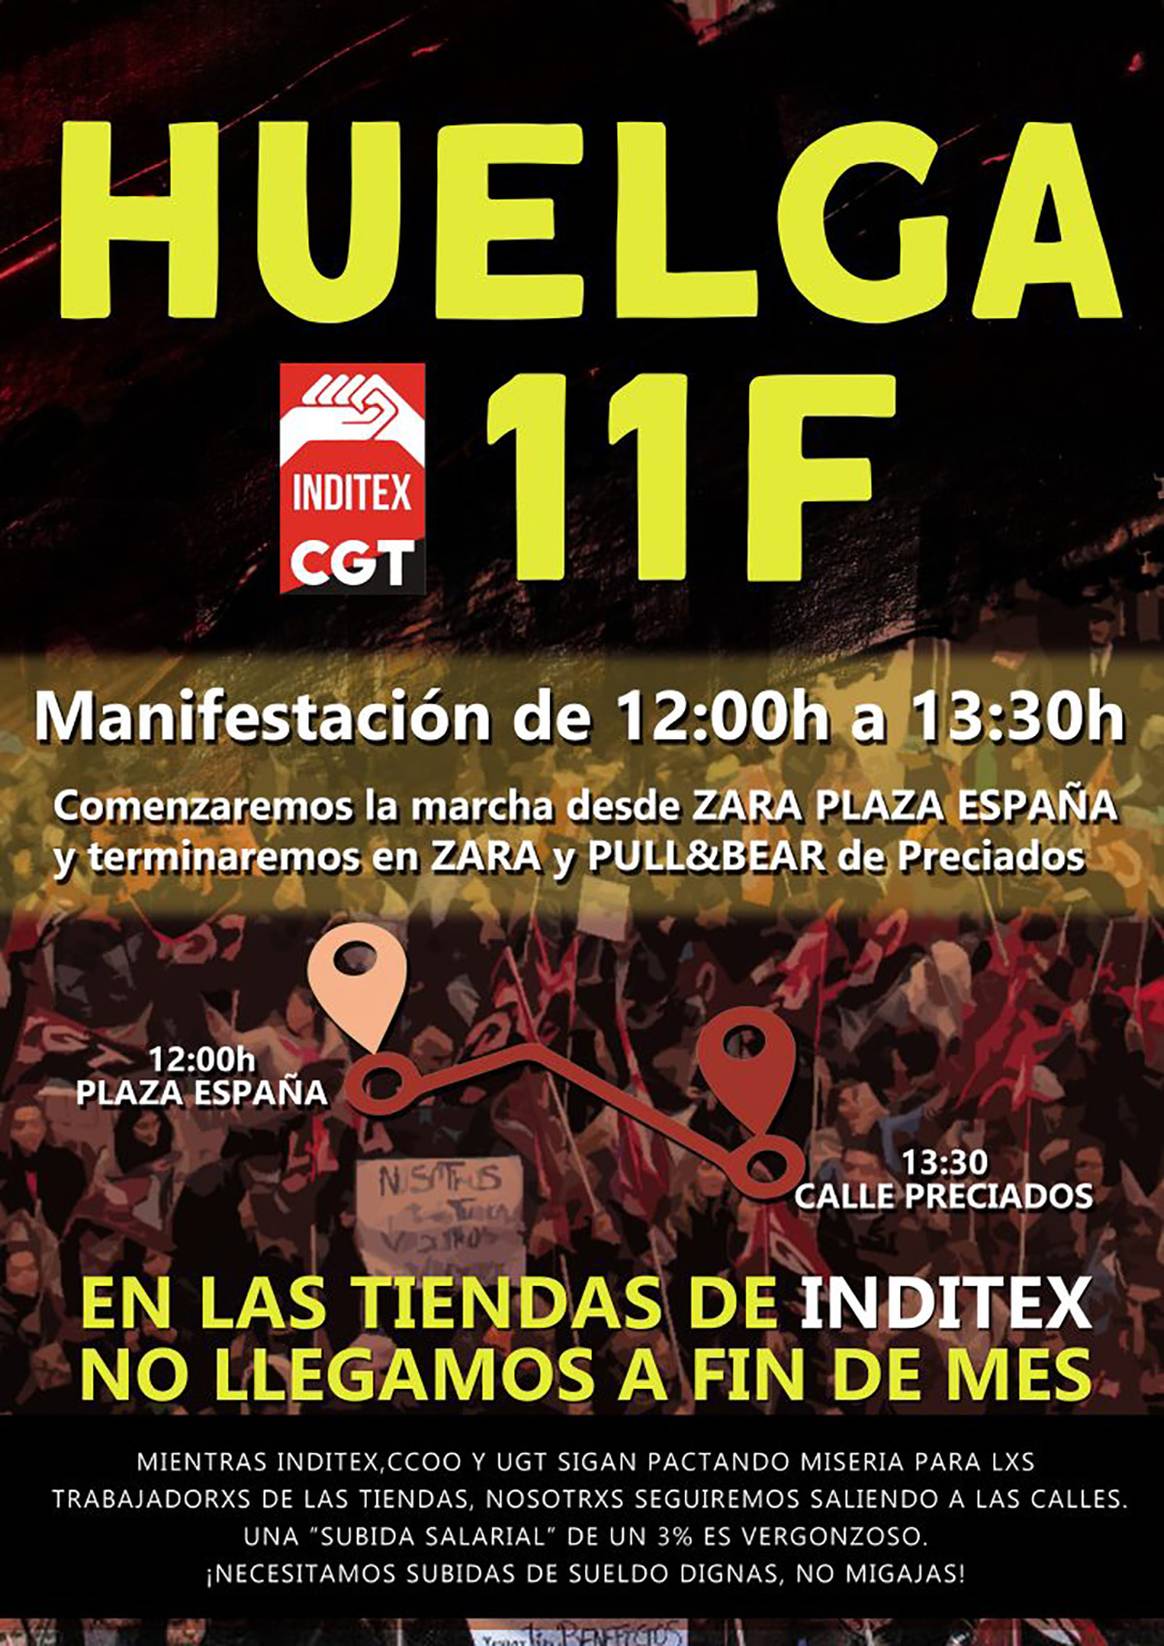 Photo Credits: Cartel de los actos organizados en Madrid con motivo de la convocatoria a la huelga de los trabajadores de tienda de Inditex convocada por la CGT para el 11 de febrero de 2023. CGT.